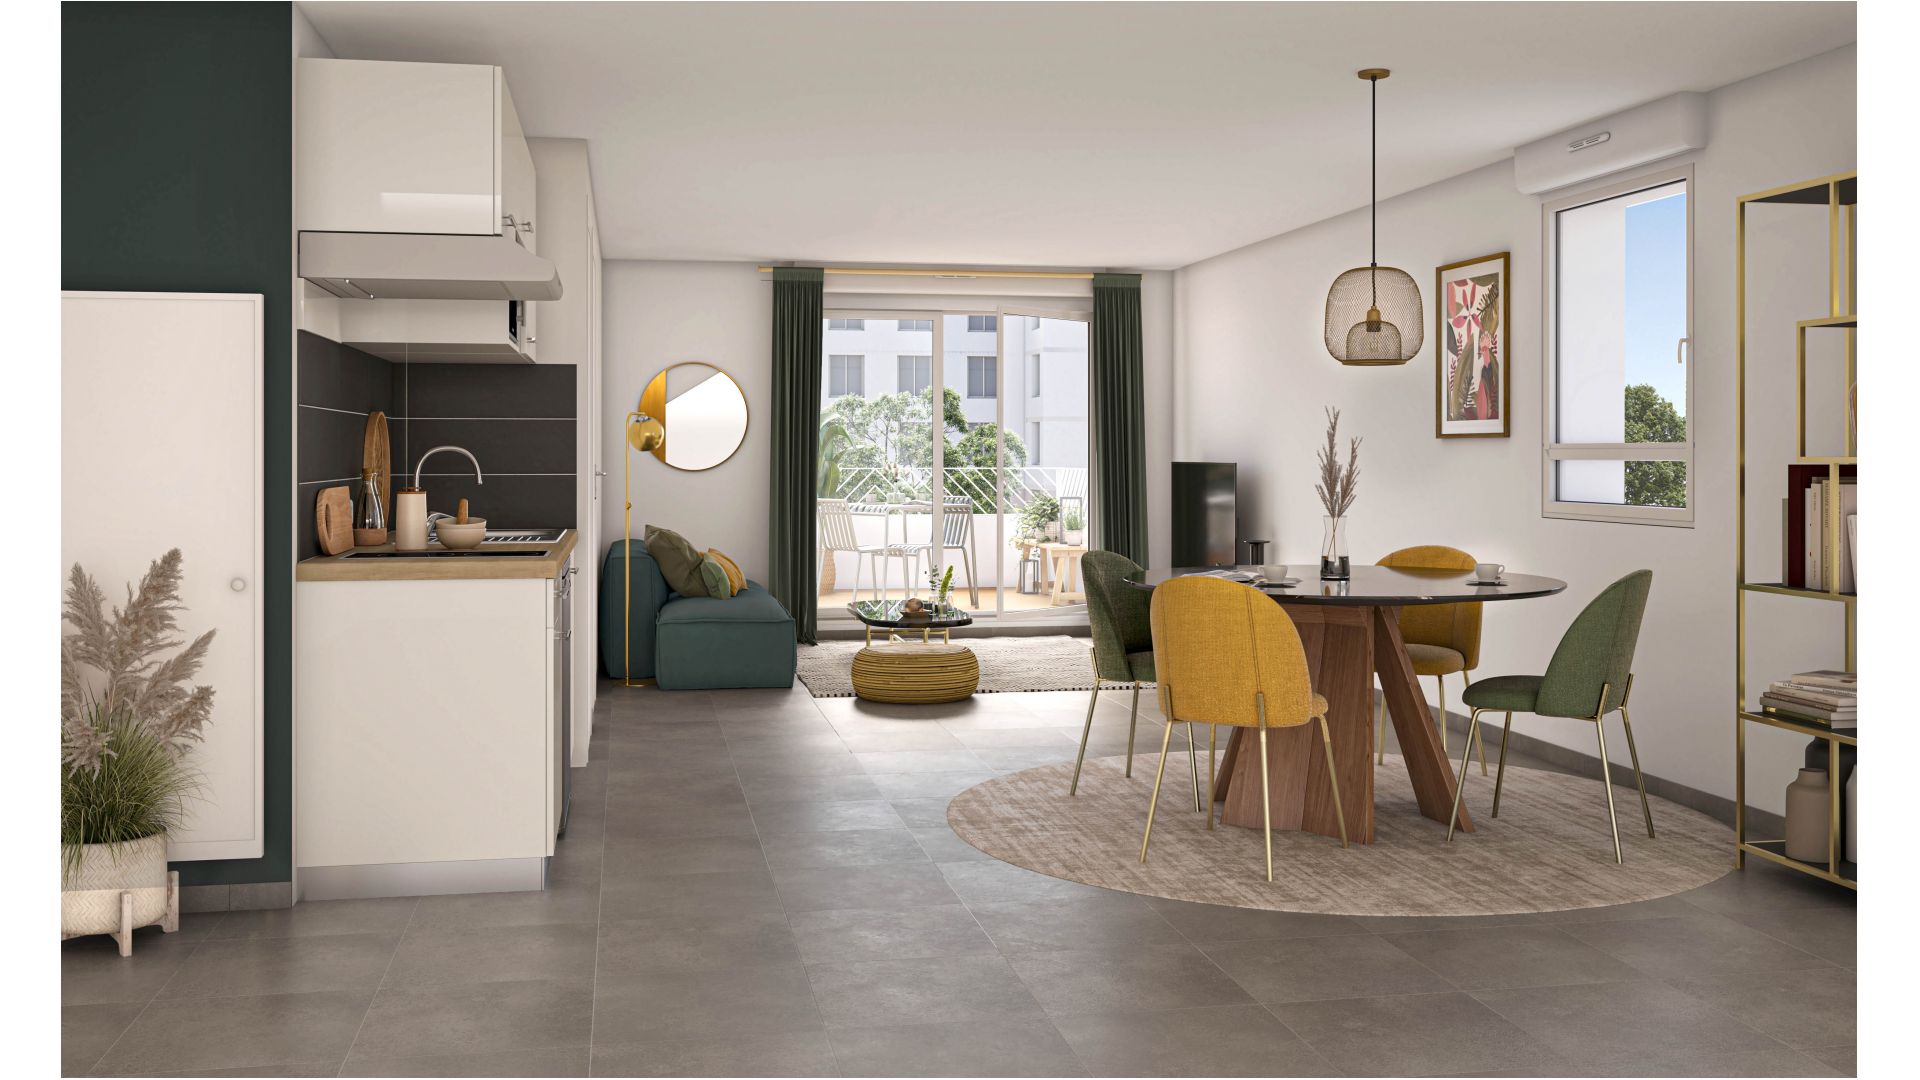 Greencity immobilier - achat appartements neufs du T1 au T2 et villas T3 et T4 - Résidence Villa Colbert -77130 Montereau-Fault-Yonne  